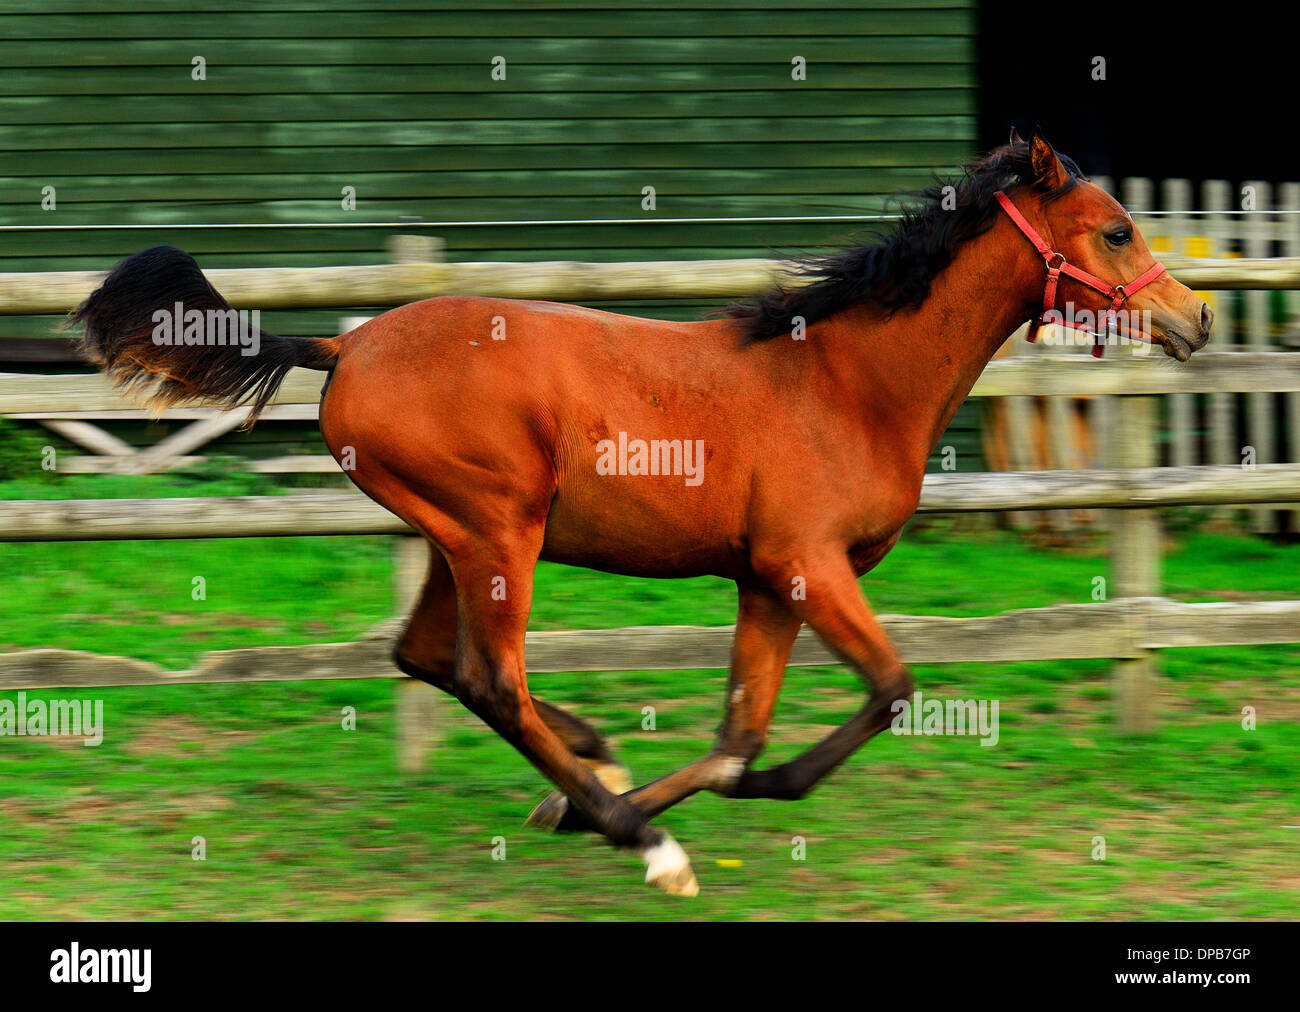 Arabian foal galloping in a paddock Stock Photo